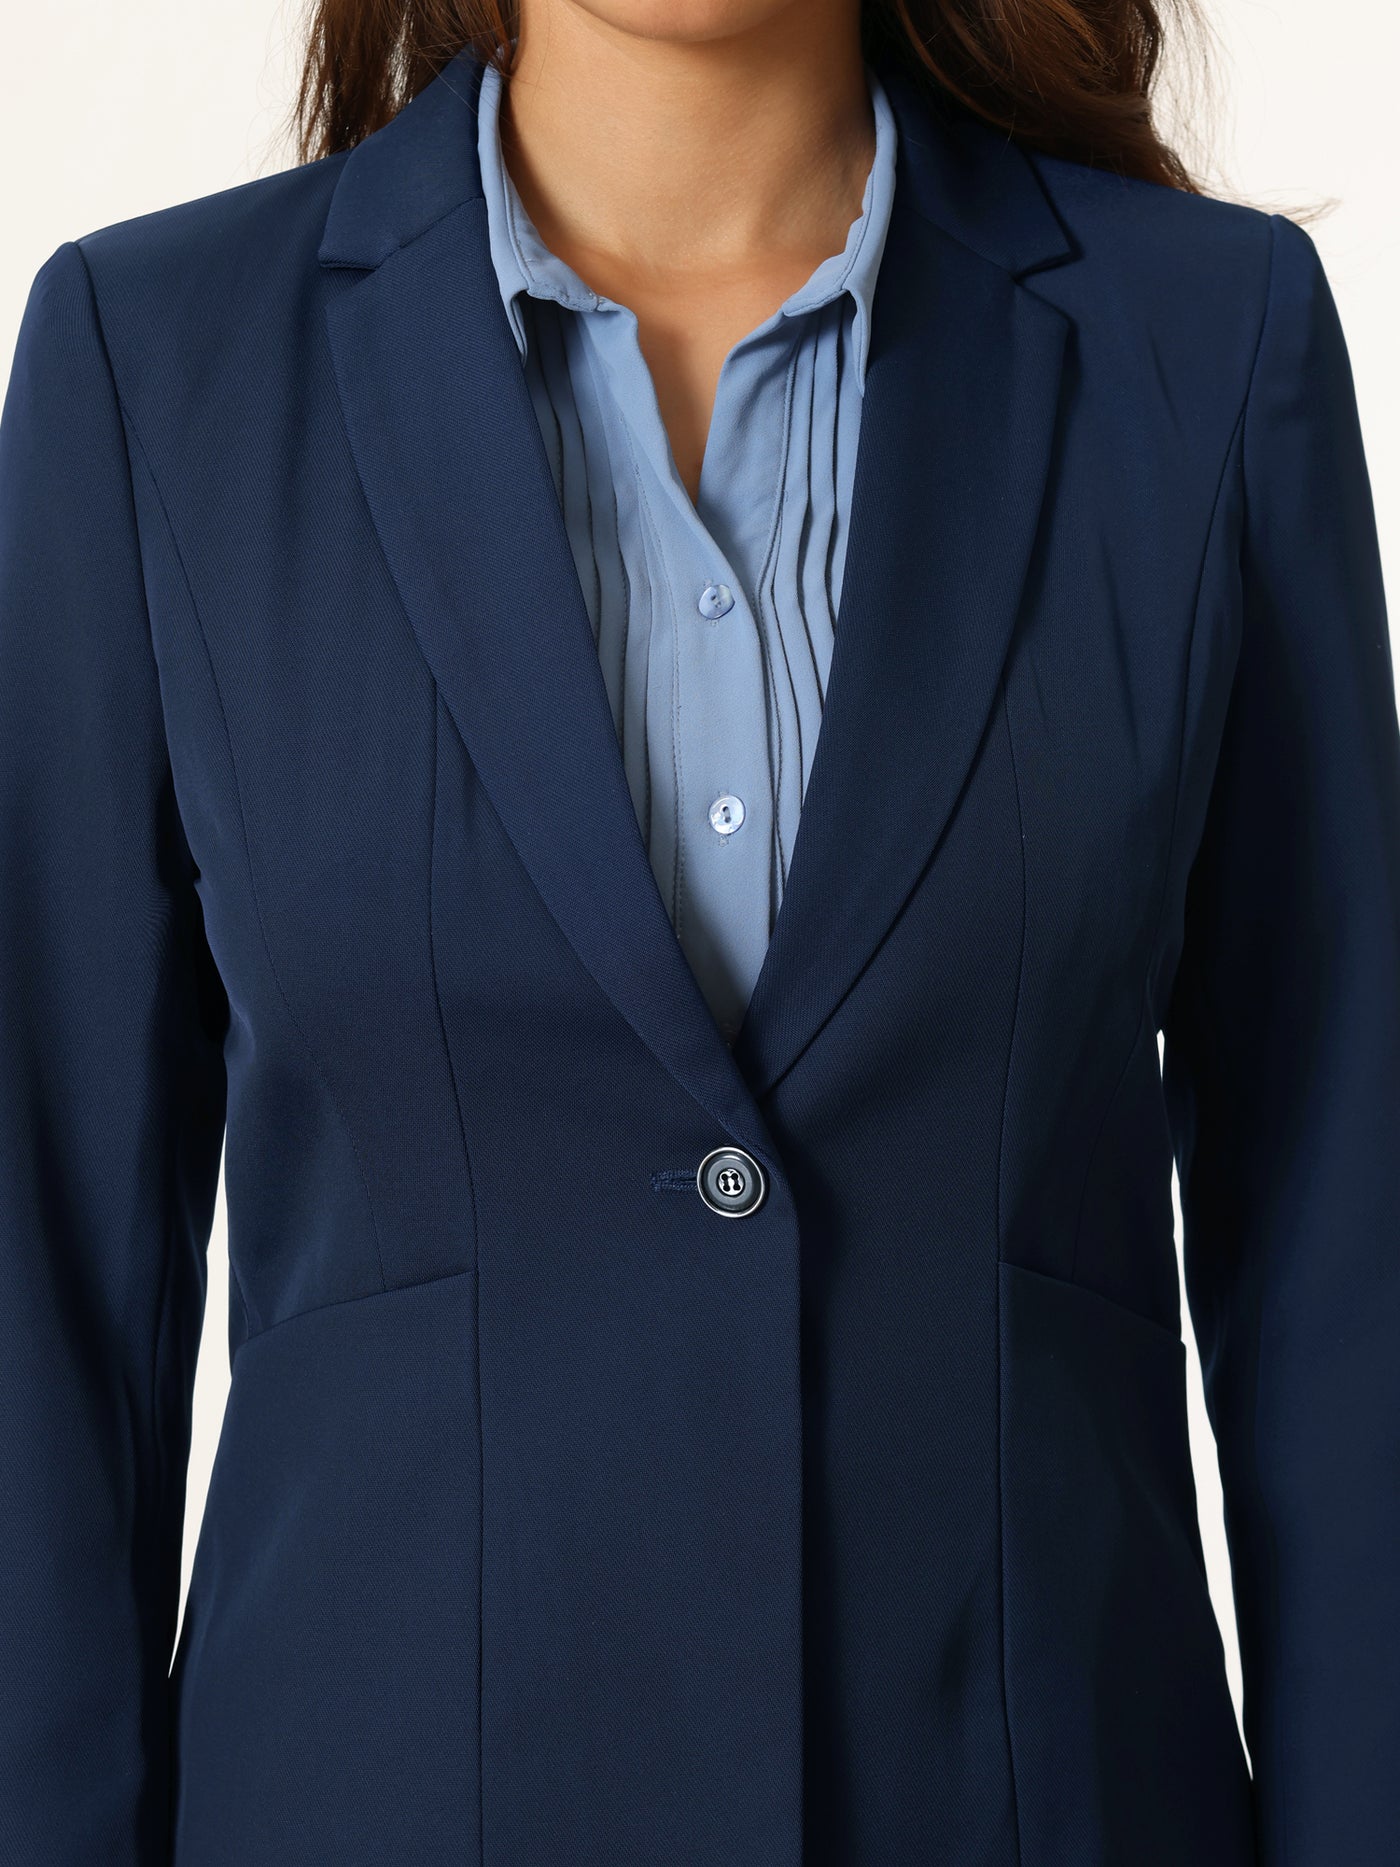 Bublédon Women's Professional Blazer One Button Work Business Suit Jacket